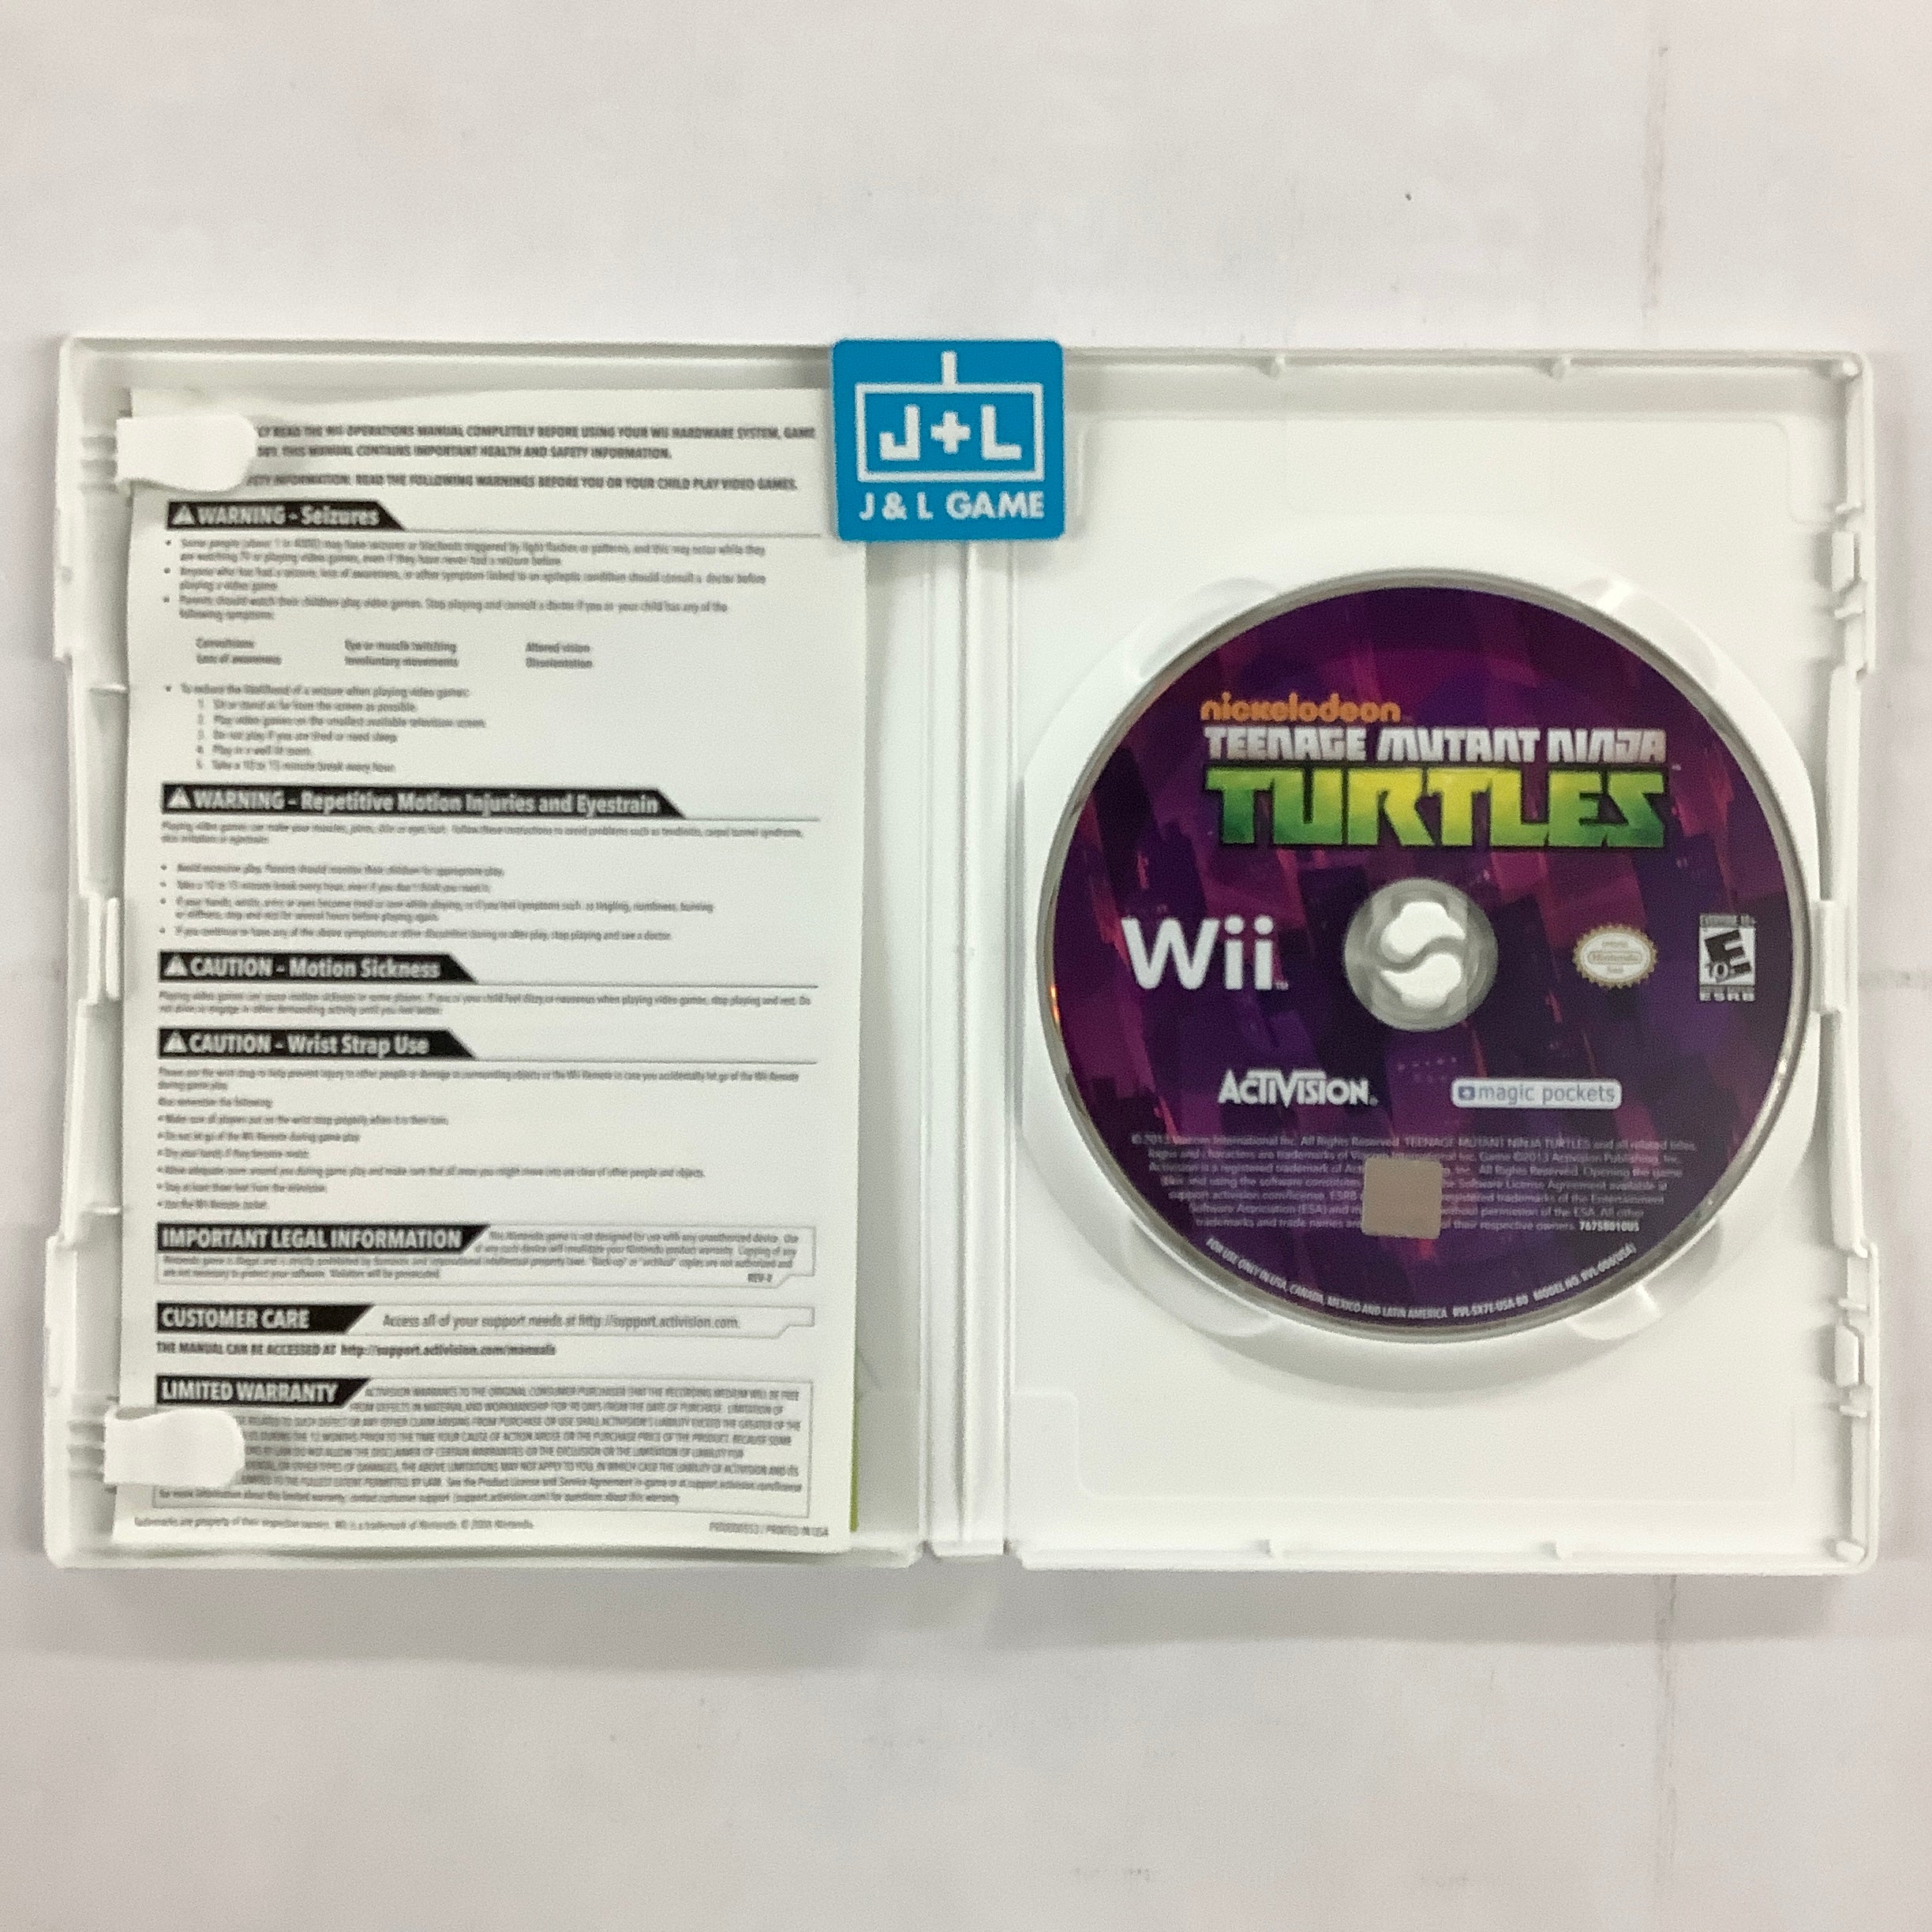 Nickelodeon Teenage Mutant Ninja Turtles - Nintendo Wii [Pre-Owned] Video Games Activision   